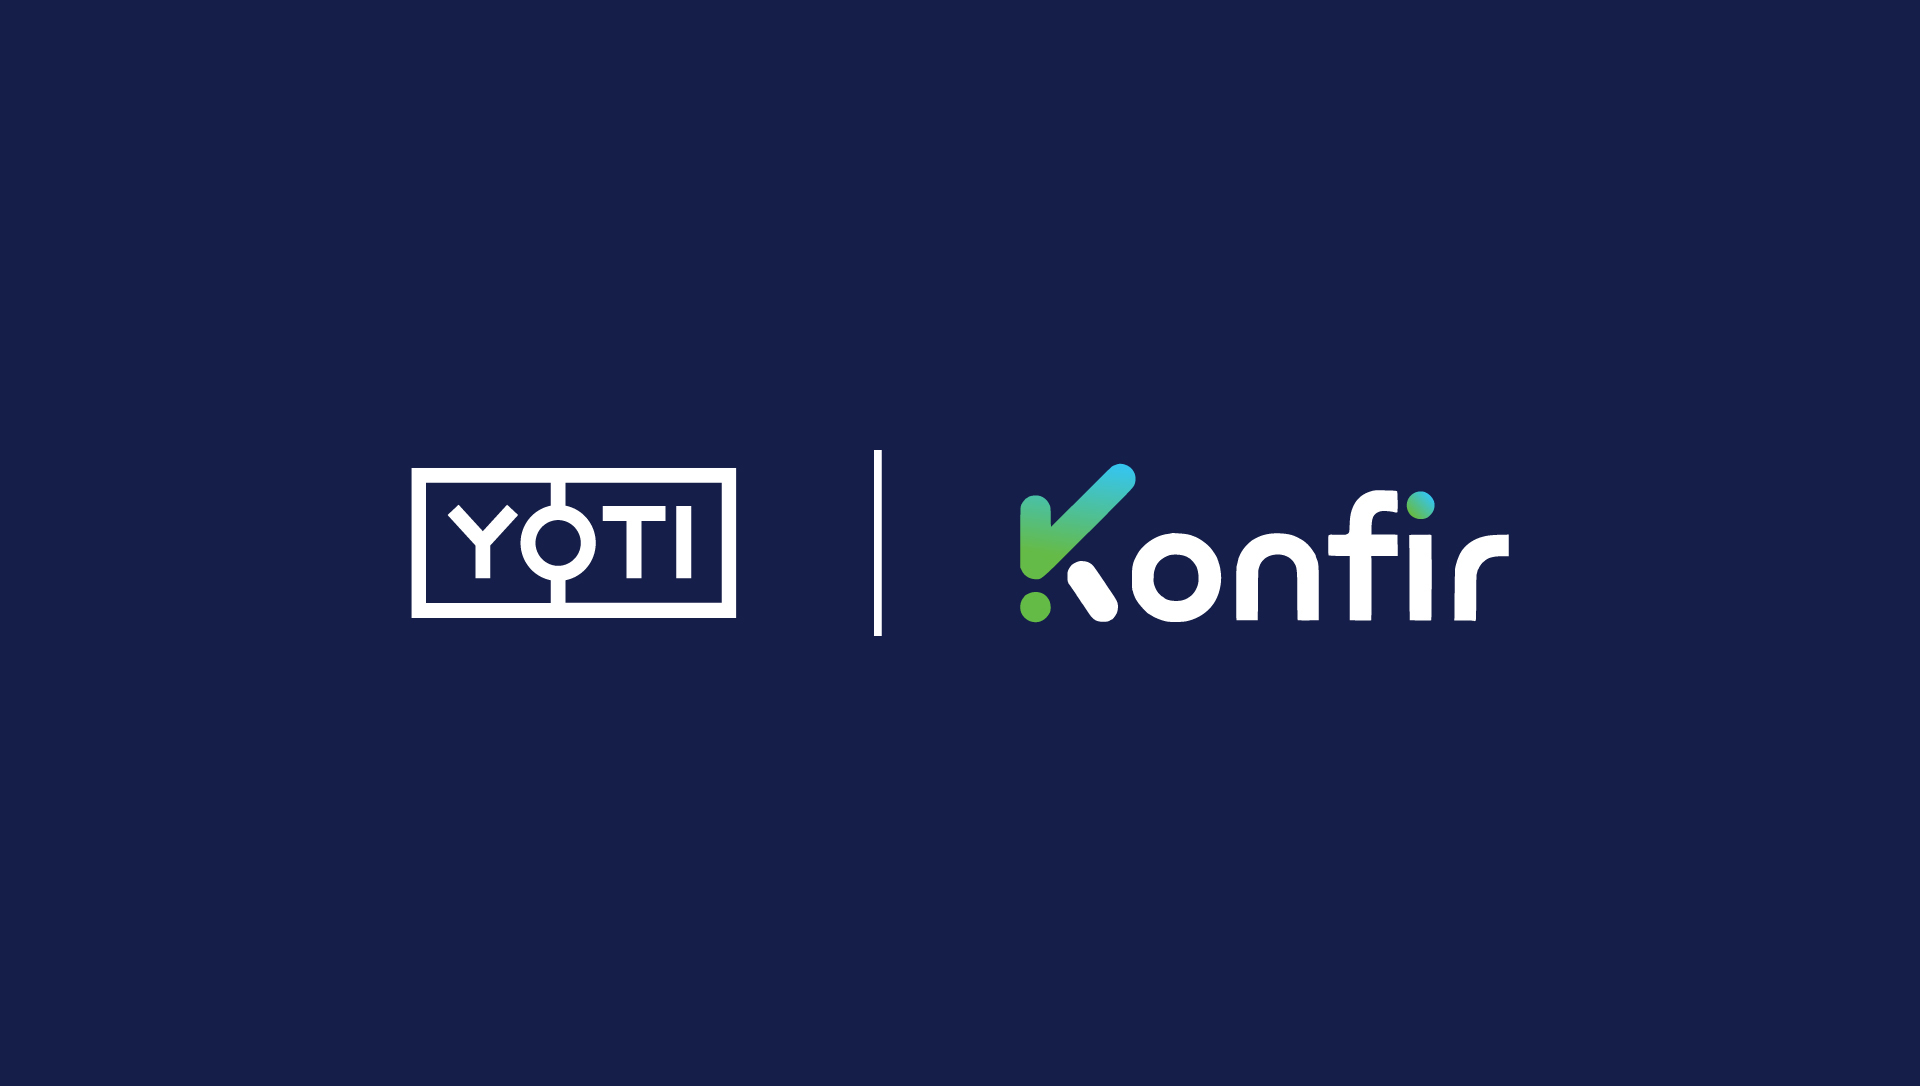 Yoti and Konfir logos presented together